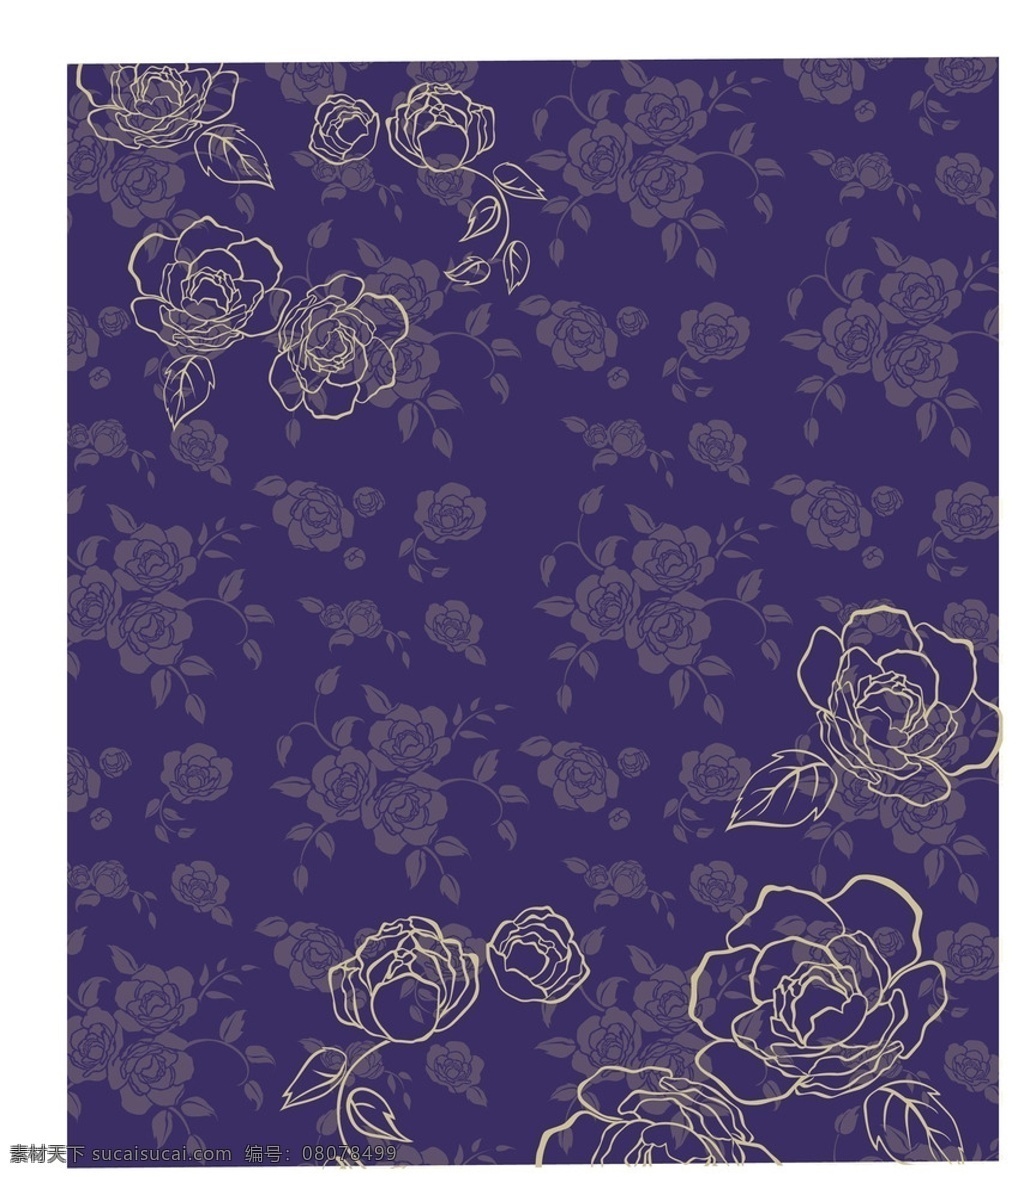 紫色 花纹 背景 典雅 别致 花朵 小碎花 底纹 布纹 矢量 底纹边框 背景底纹